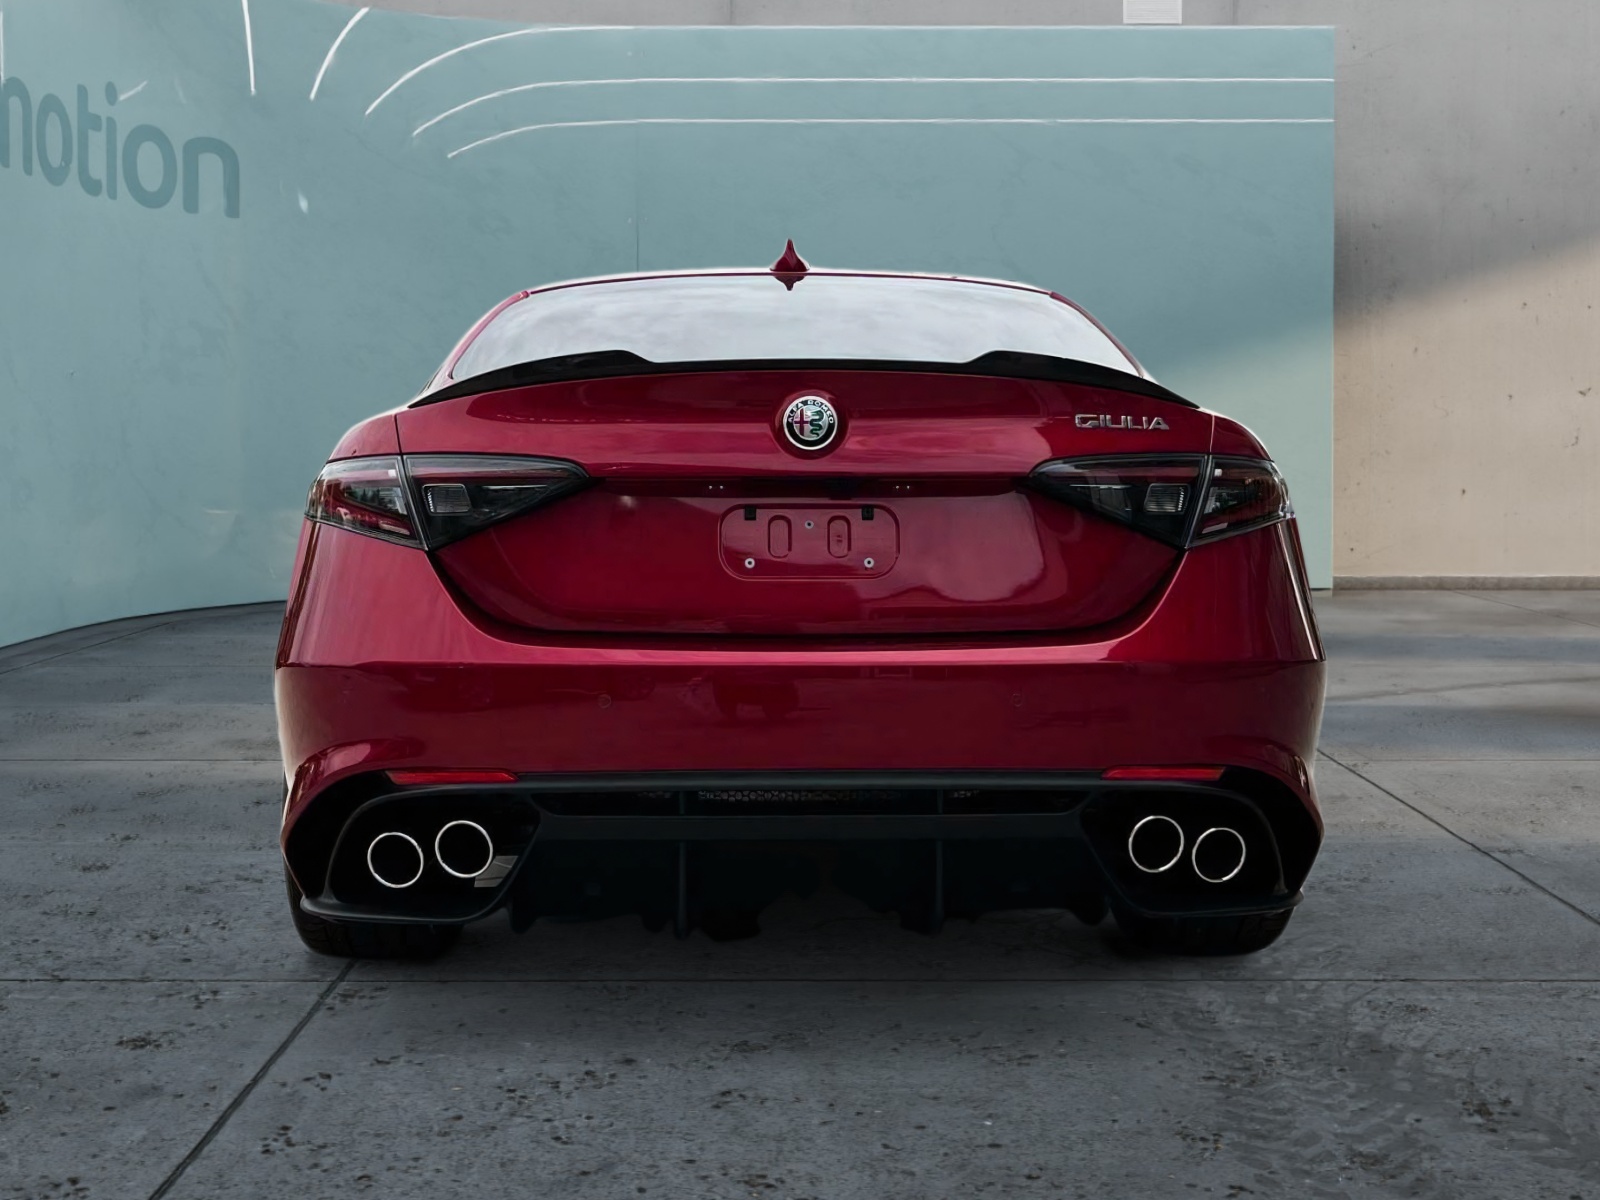 Alfa Romeo Limousine Gebrauchtwagen online kaufen bei instamotion